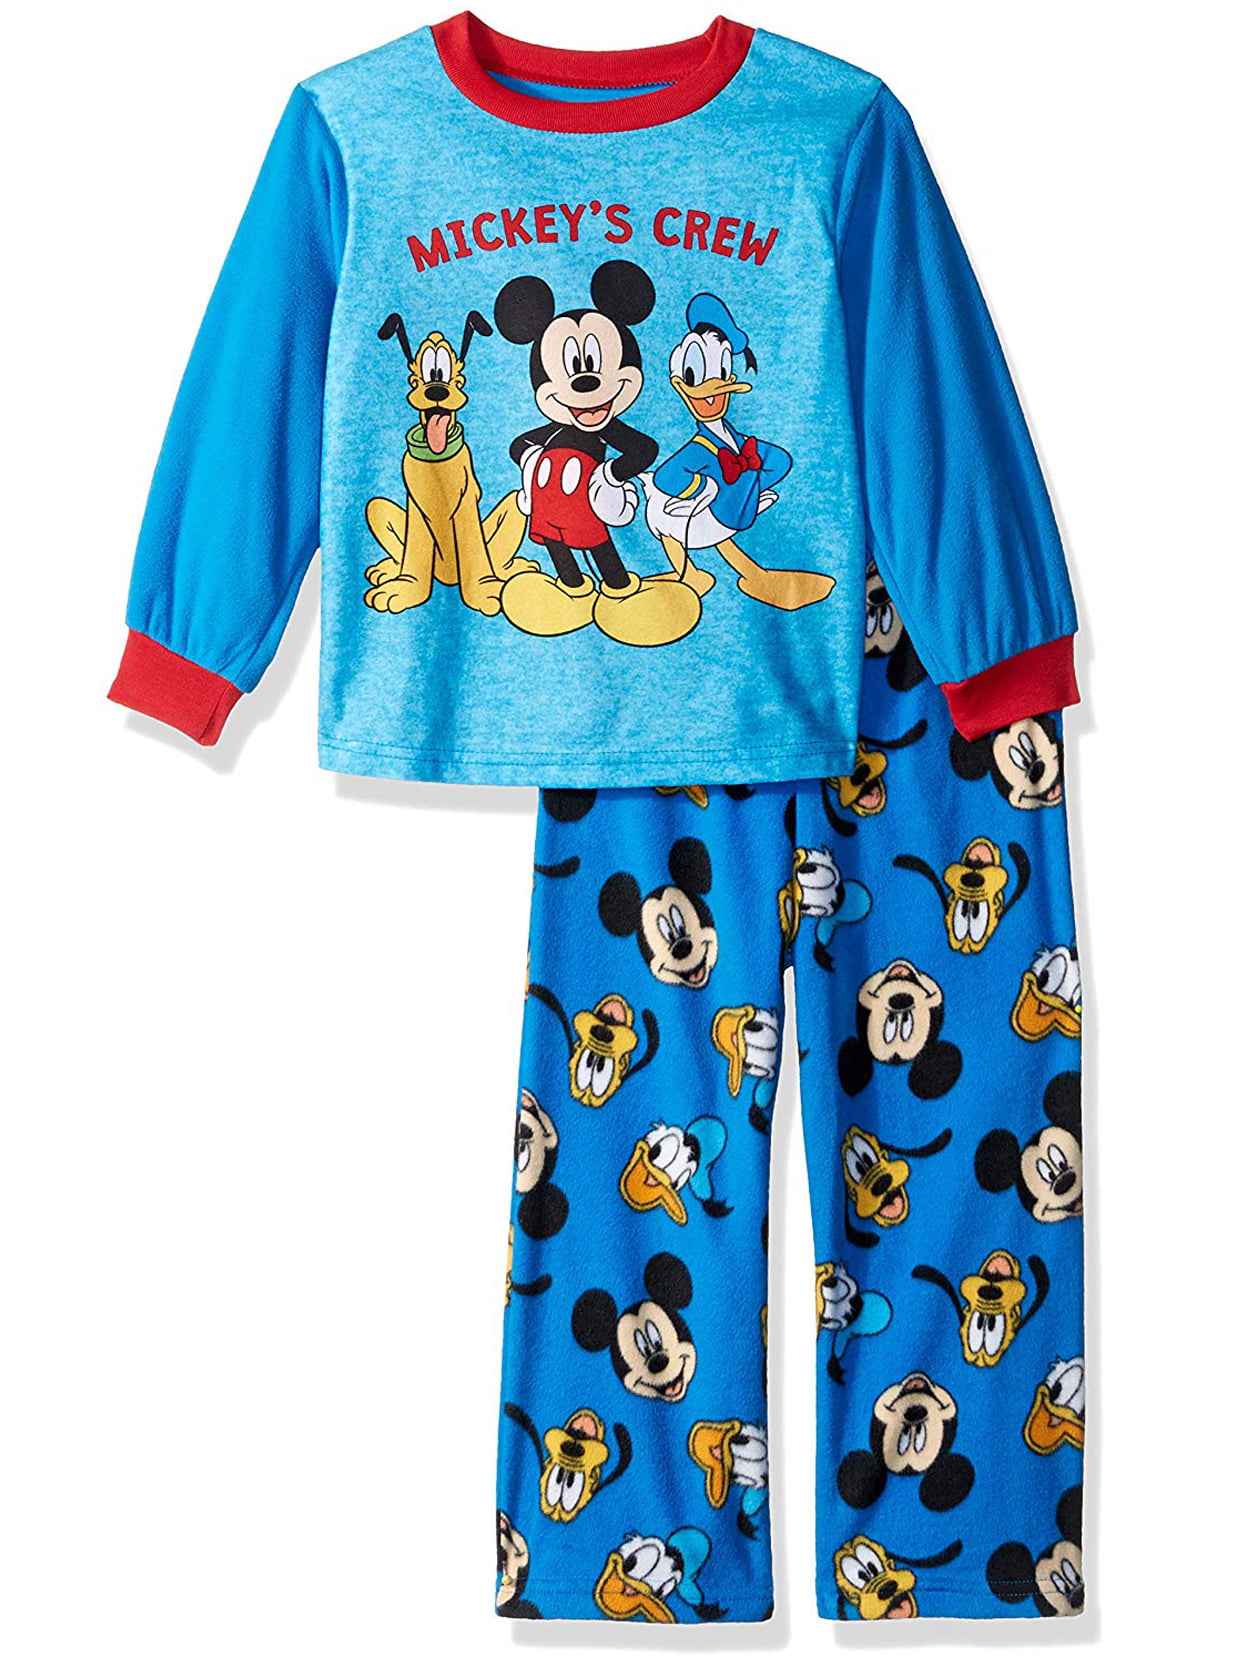 Boys Mickey Mouse PyjamasBoys Disney Mickey Mouse PJsBoys Disney PJ Set 